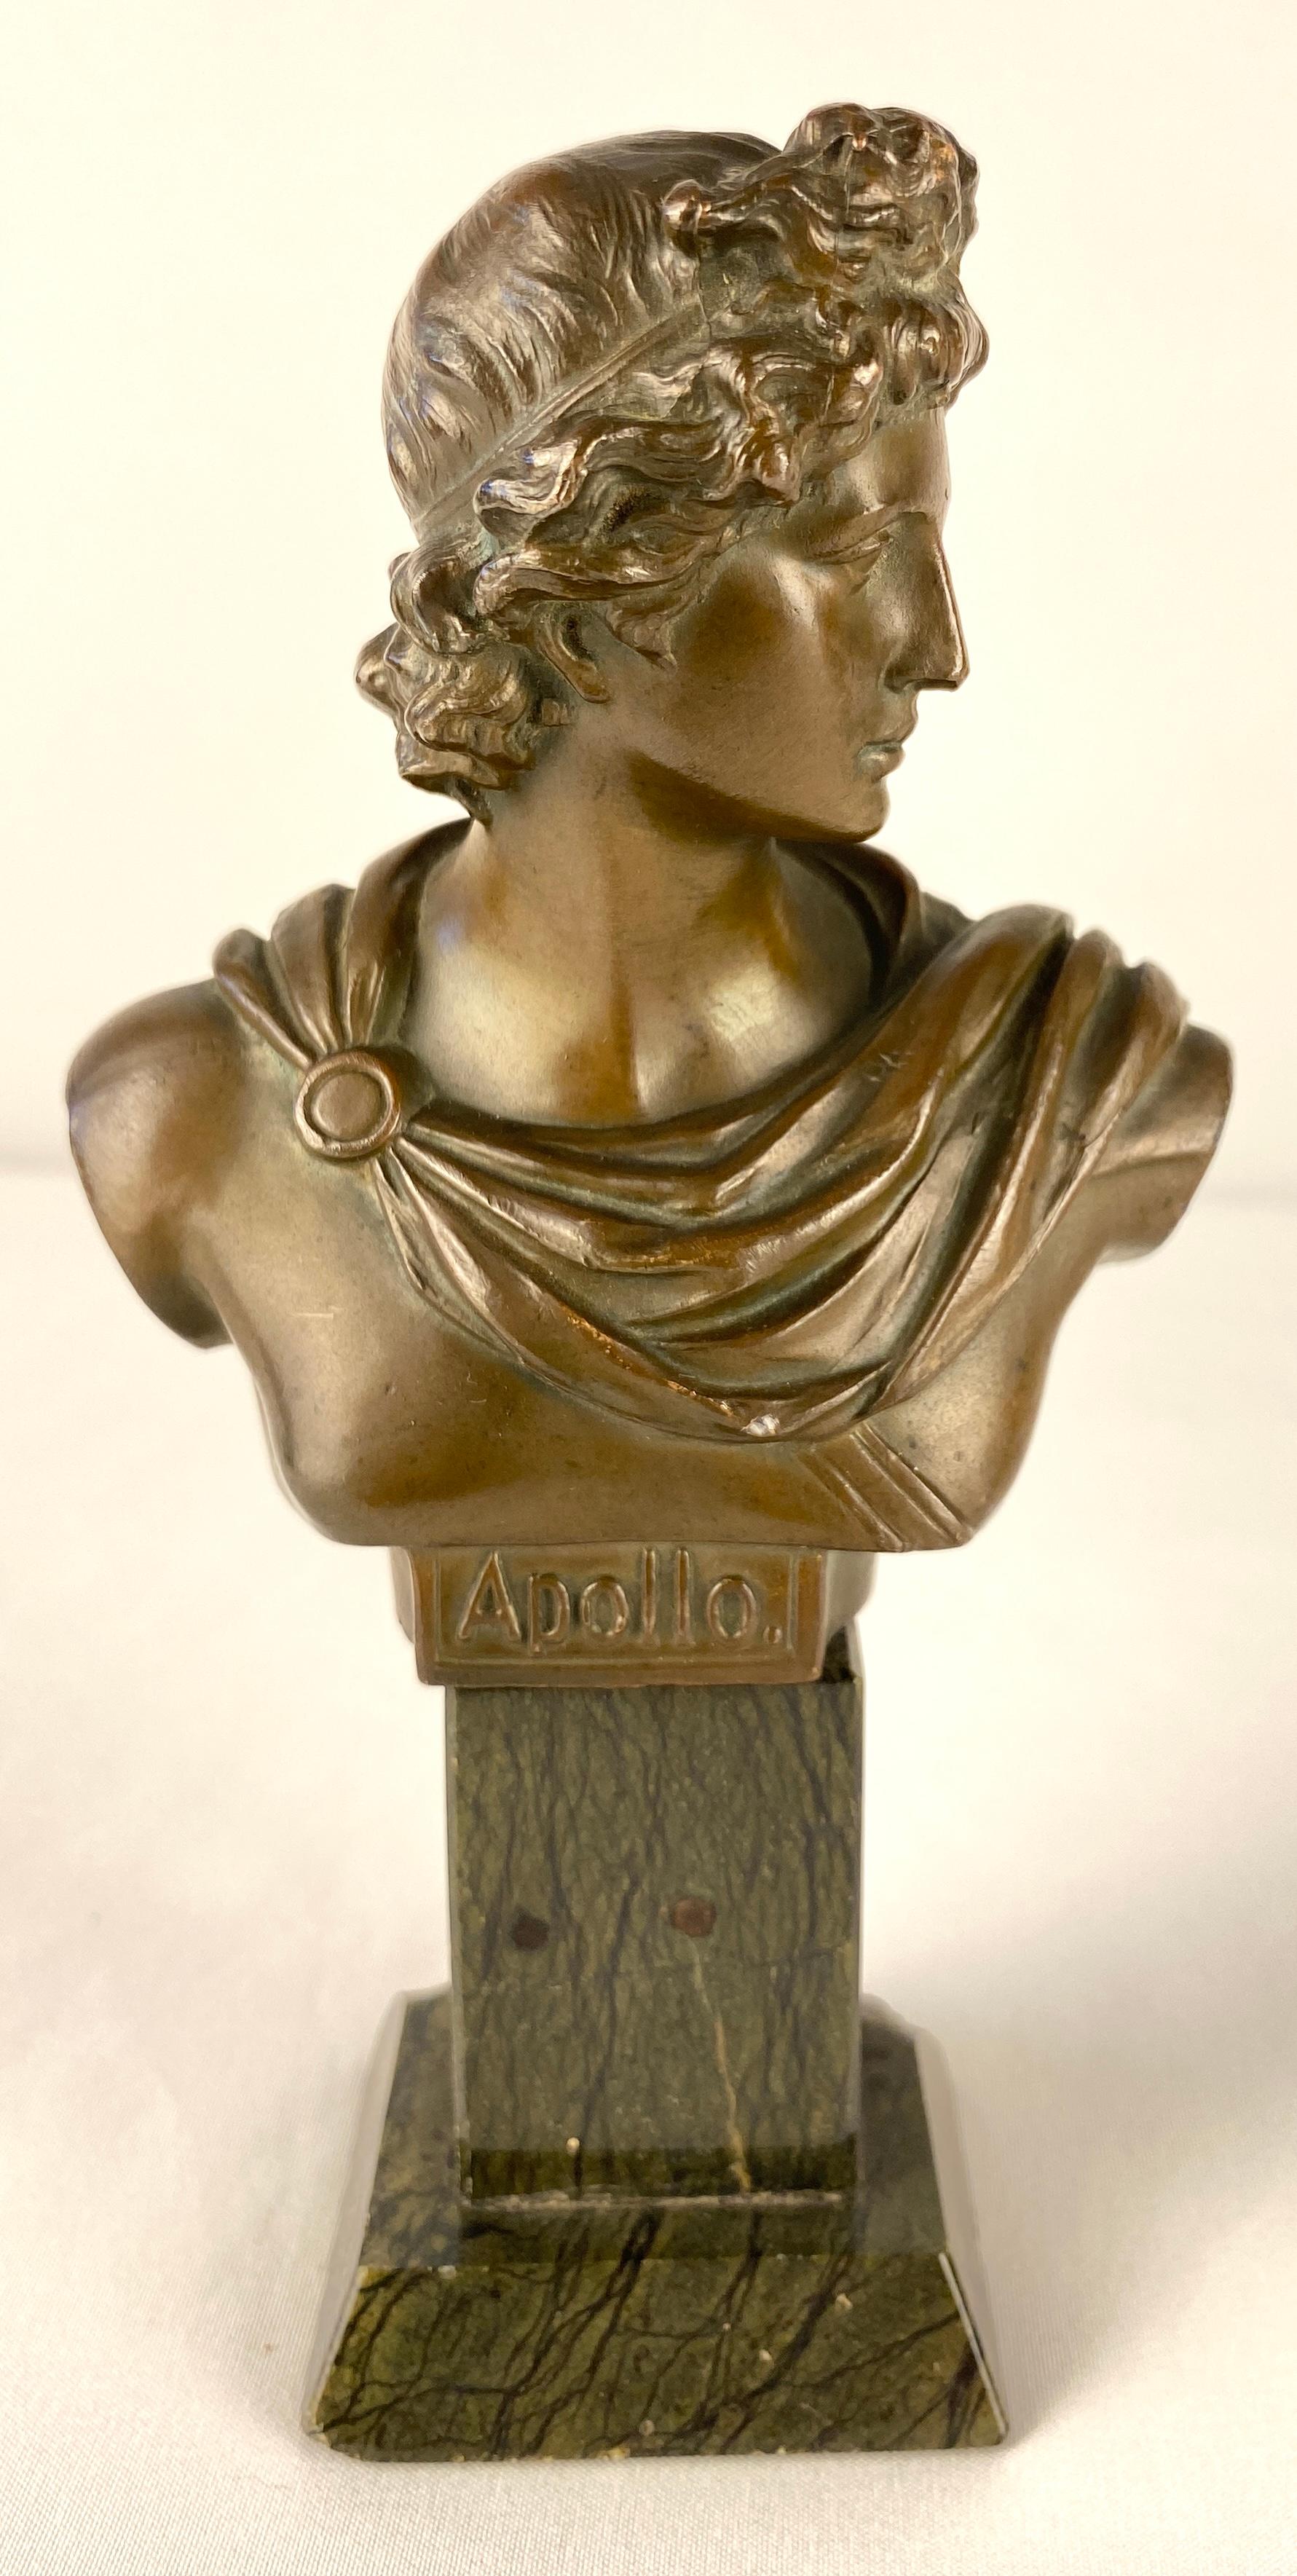 Paar sehr dekorative französische Bronzebüsten von Apollo und Diana aus dem 19. Jahrhundert oder neoklassizistische Büsten im Gewand.

Auf quadratischen Sockeln aus schwarzem Marmor montiert, sind diese Büsten Wunderwerke von raffinierter Schönheit